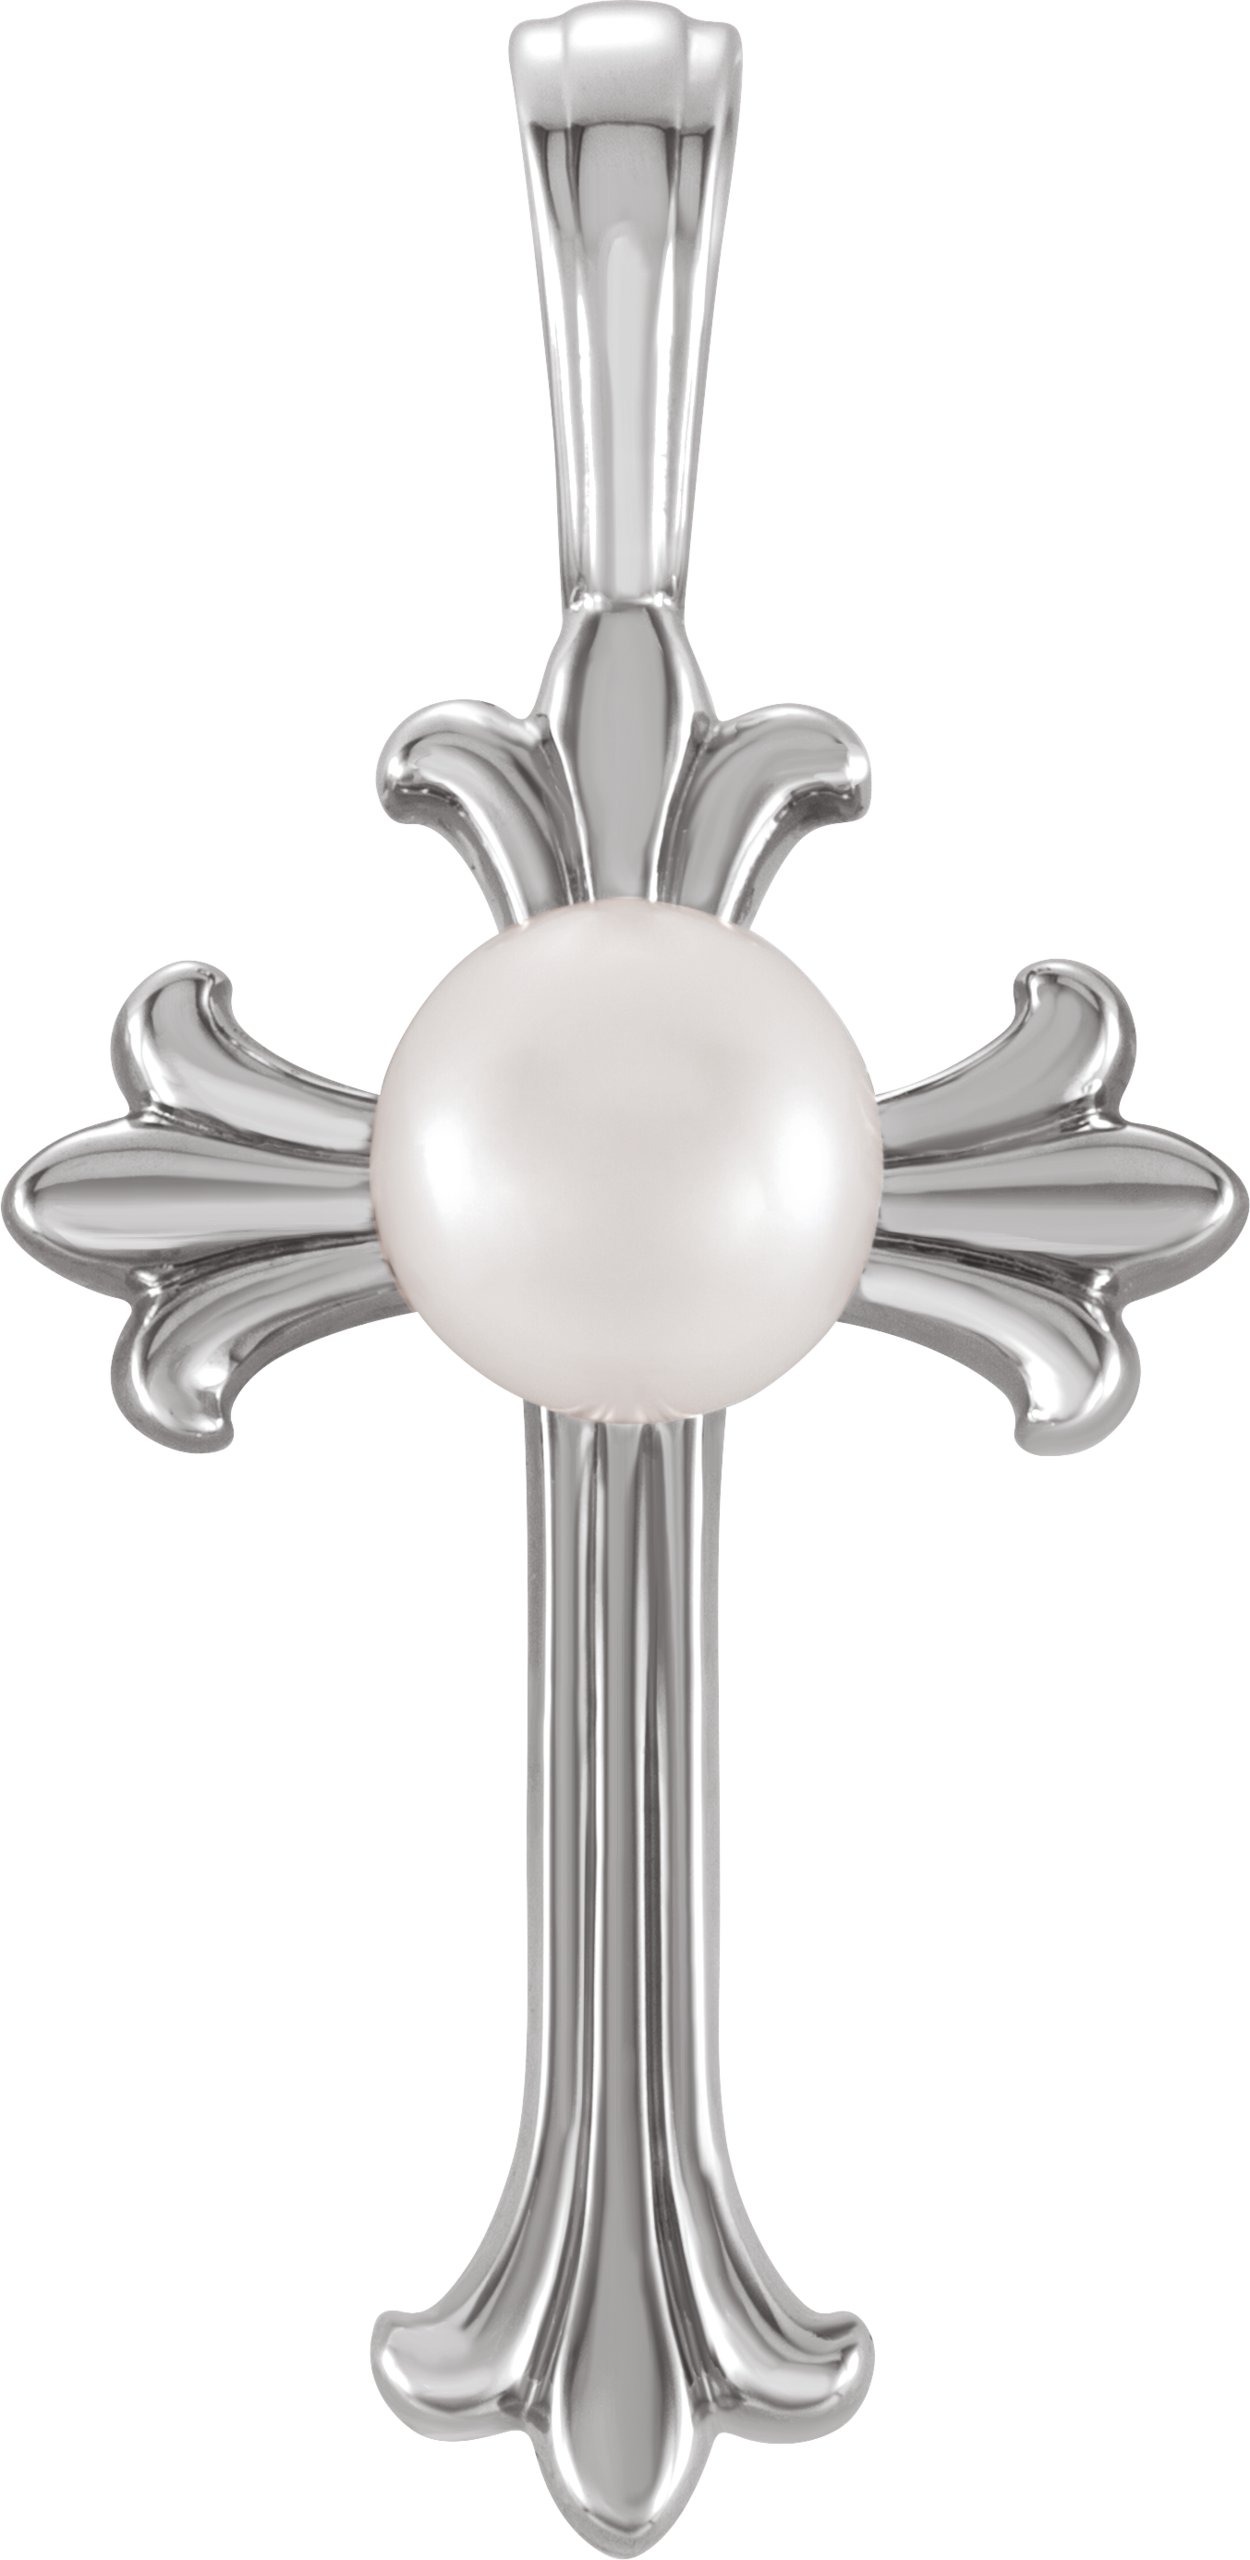 14K White Cultured White Freshwater Pearl Cross Pendant